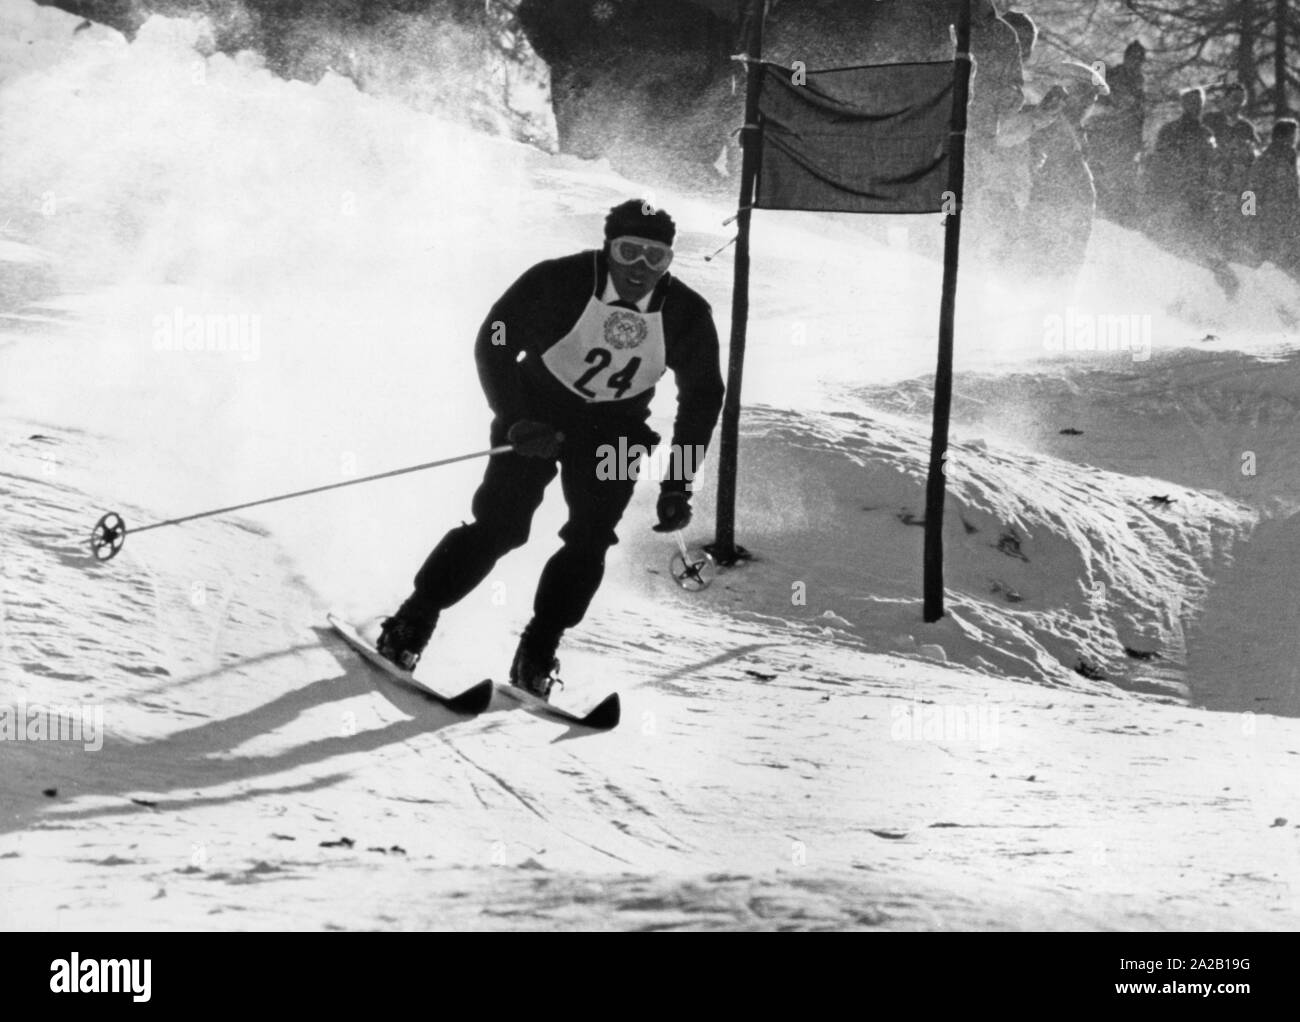 Das Bild zeigt einen Teilnehmer im Riesenslalom bei den Olympischen Winterspielen 1956 in Cortina d'Ampezzo. Es ist der Pol Josef Marusarz, die Chance ohne Medaille geblieben. Stockfoto